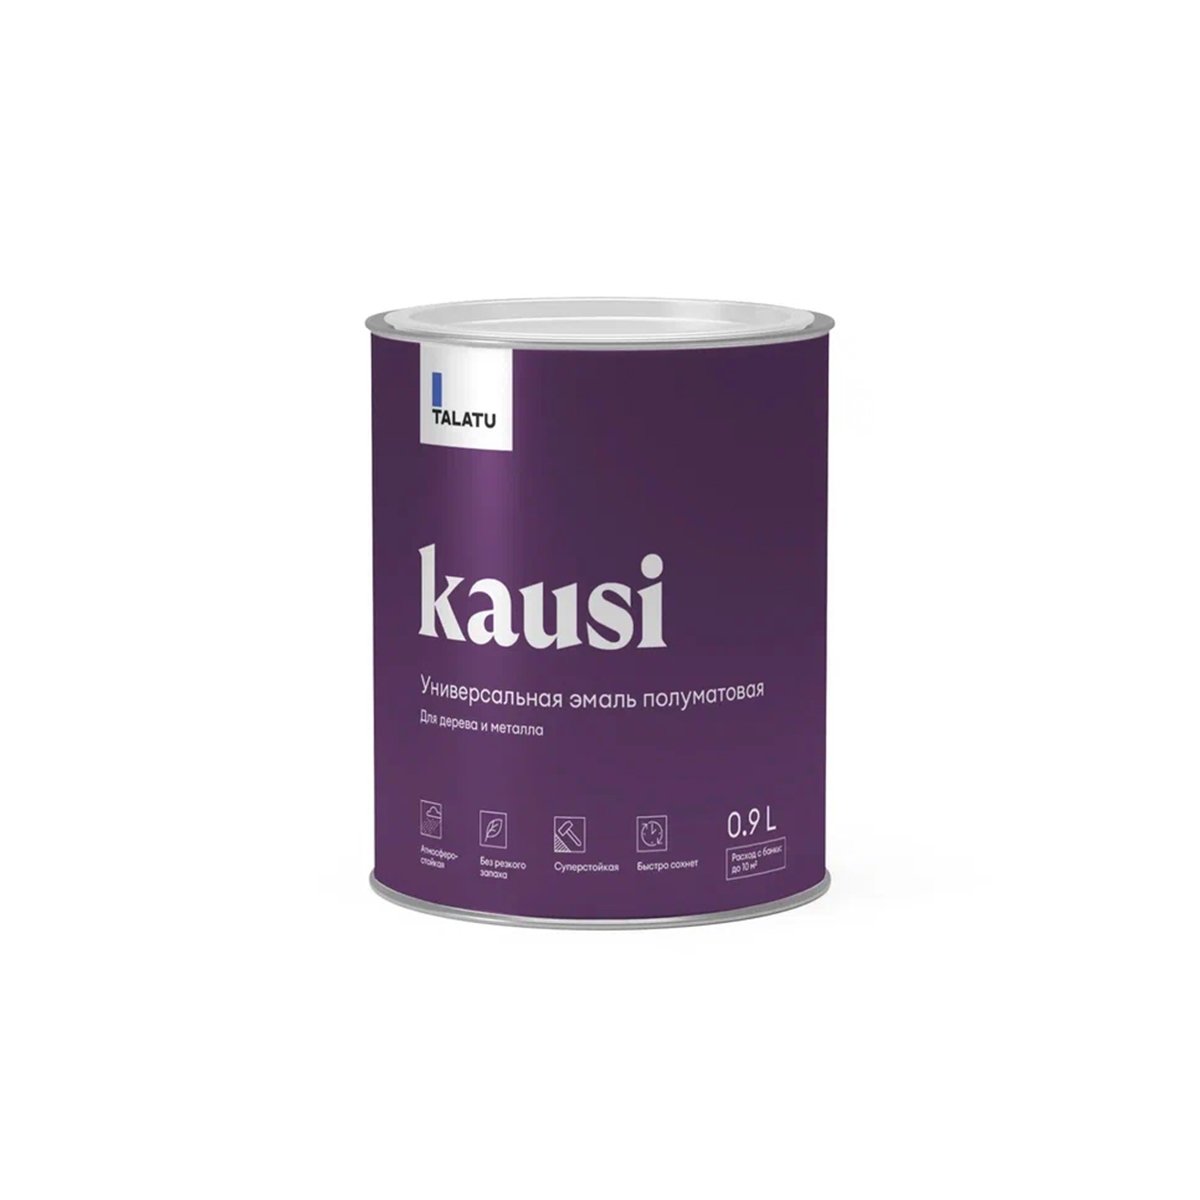 Эмаль универсальная Talatu Kausi, алкидная, полуматовая, база C, бесцветная, 0,9 л алкидная эмаль для радиаторов paritet